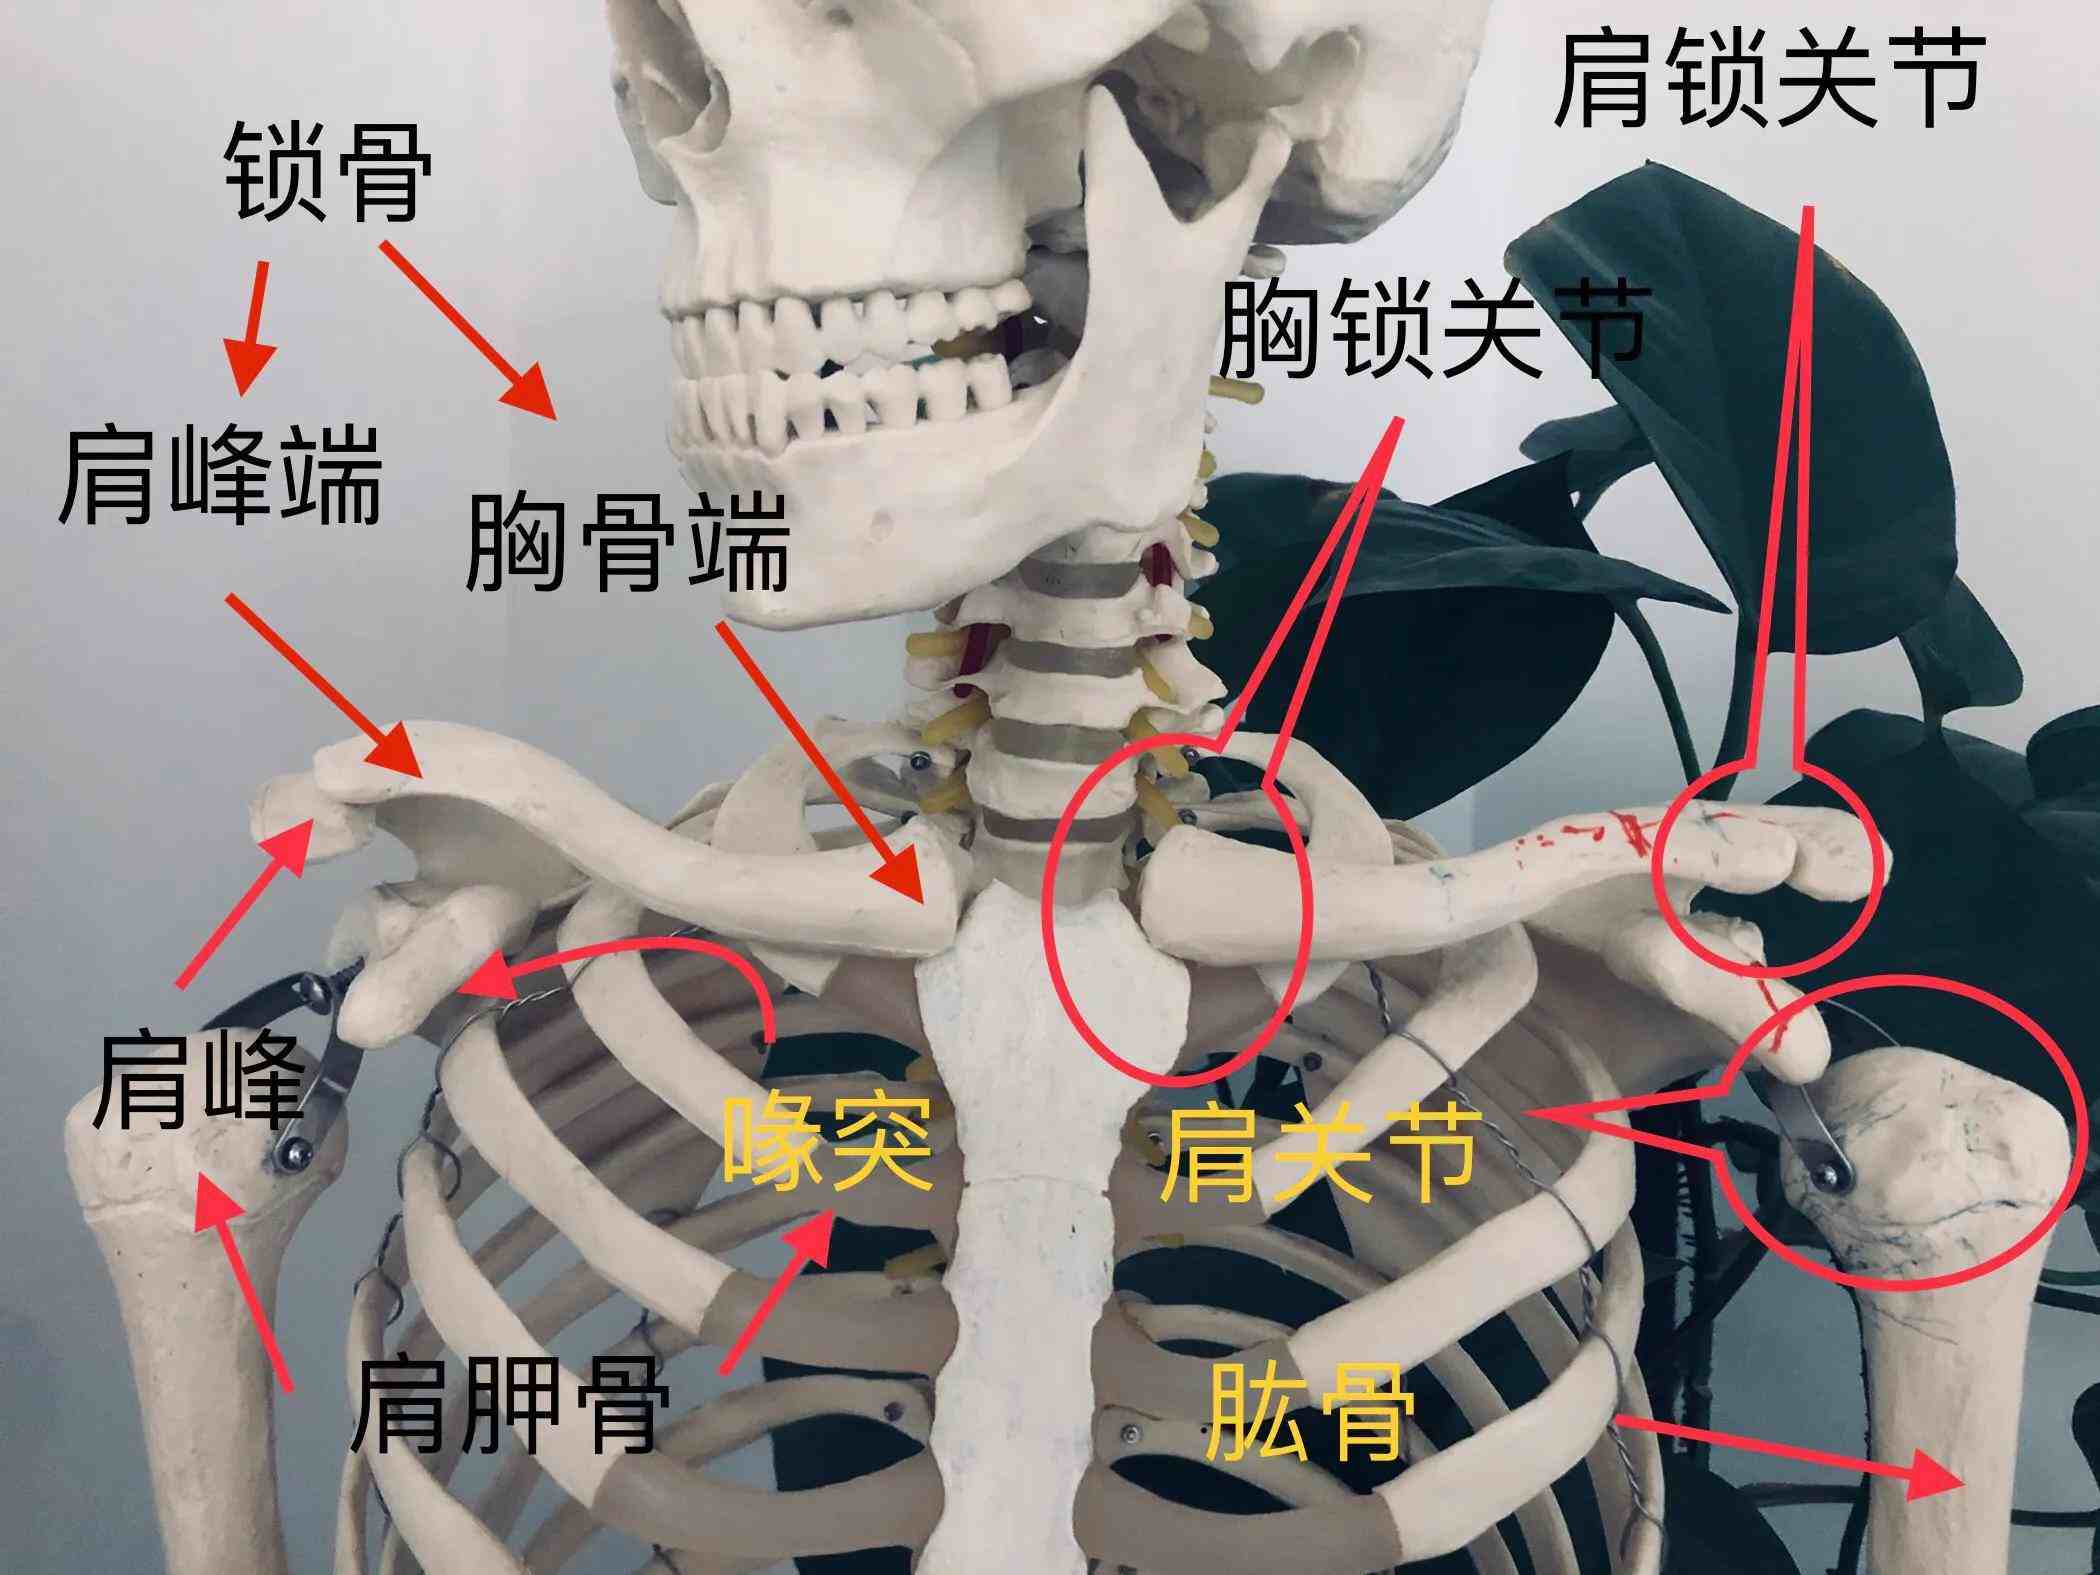 肩胛骨与锁骨的结构图图片